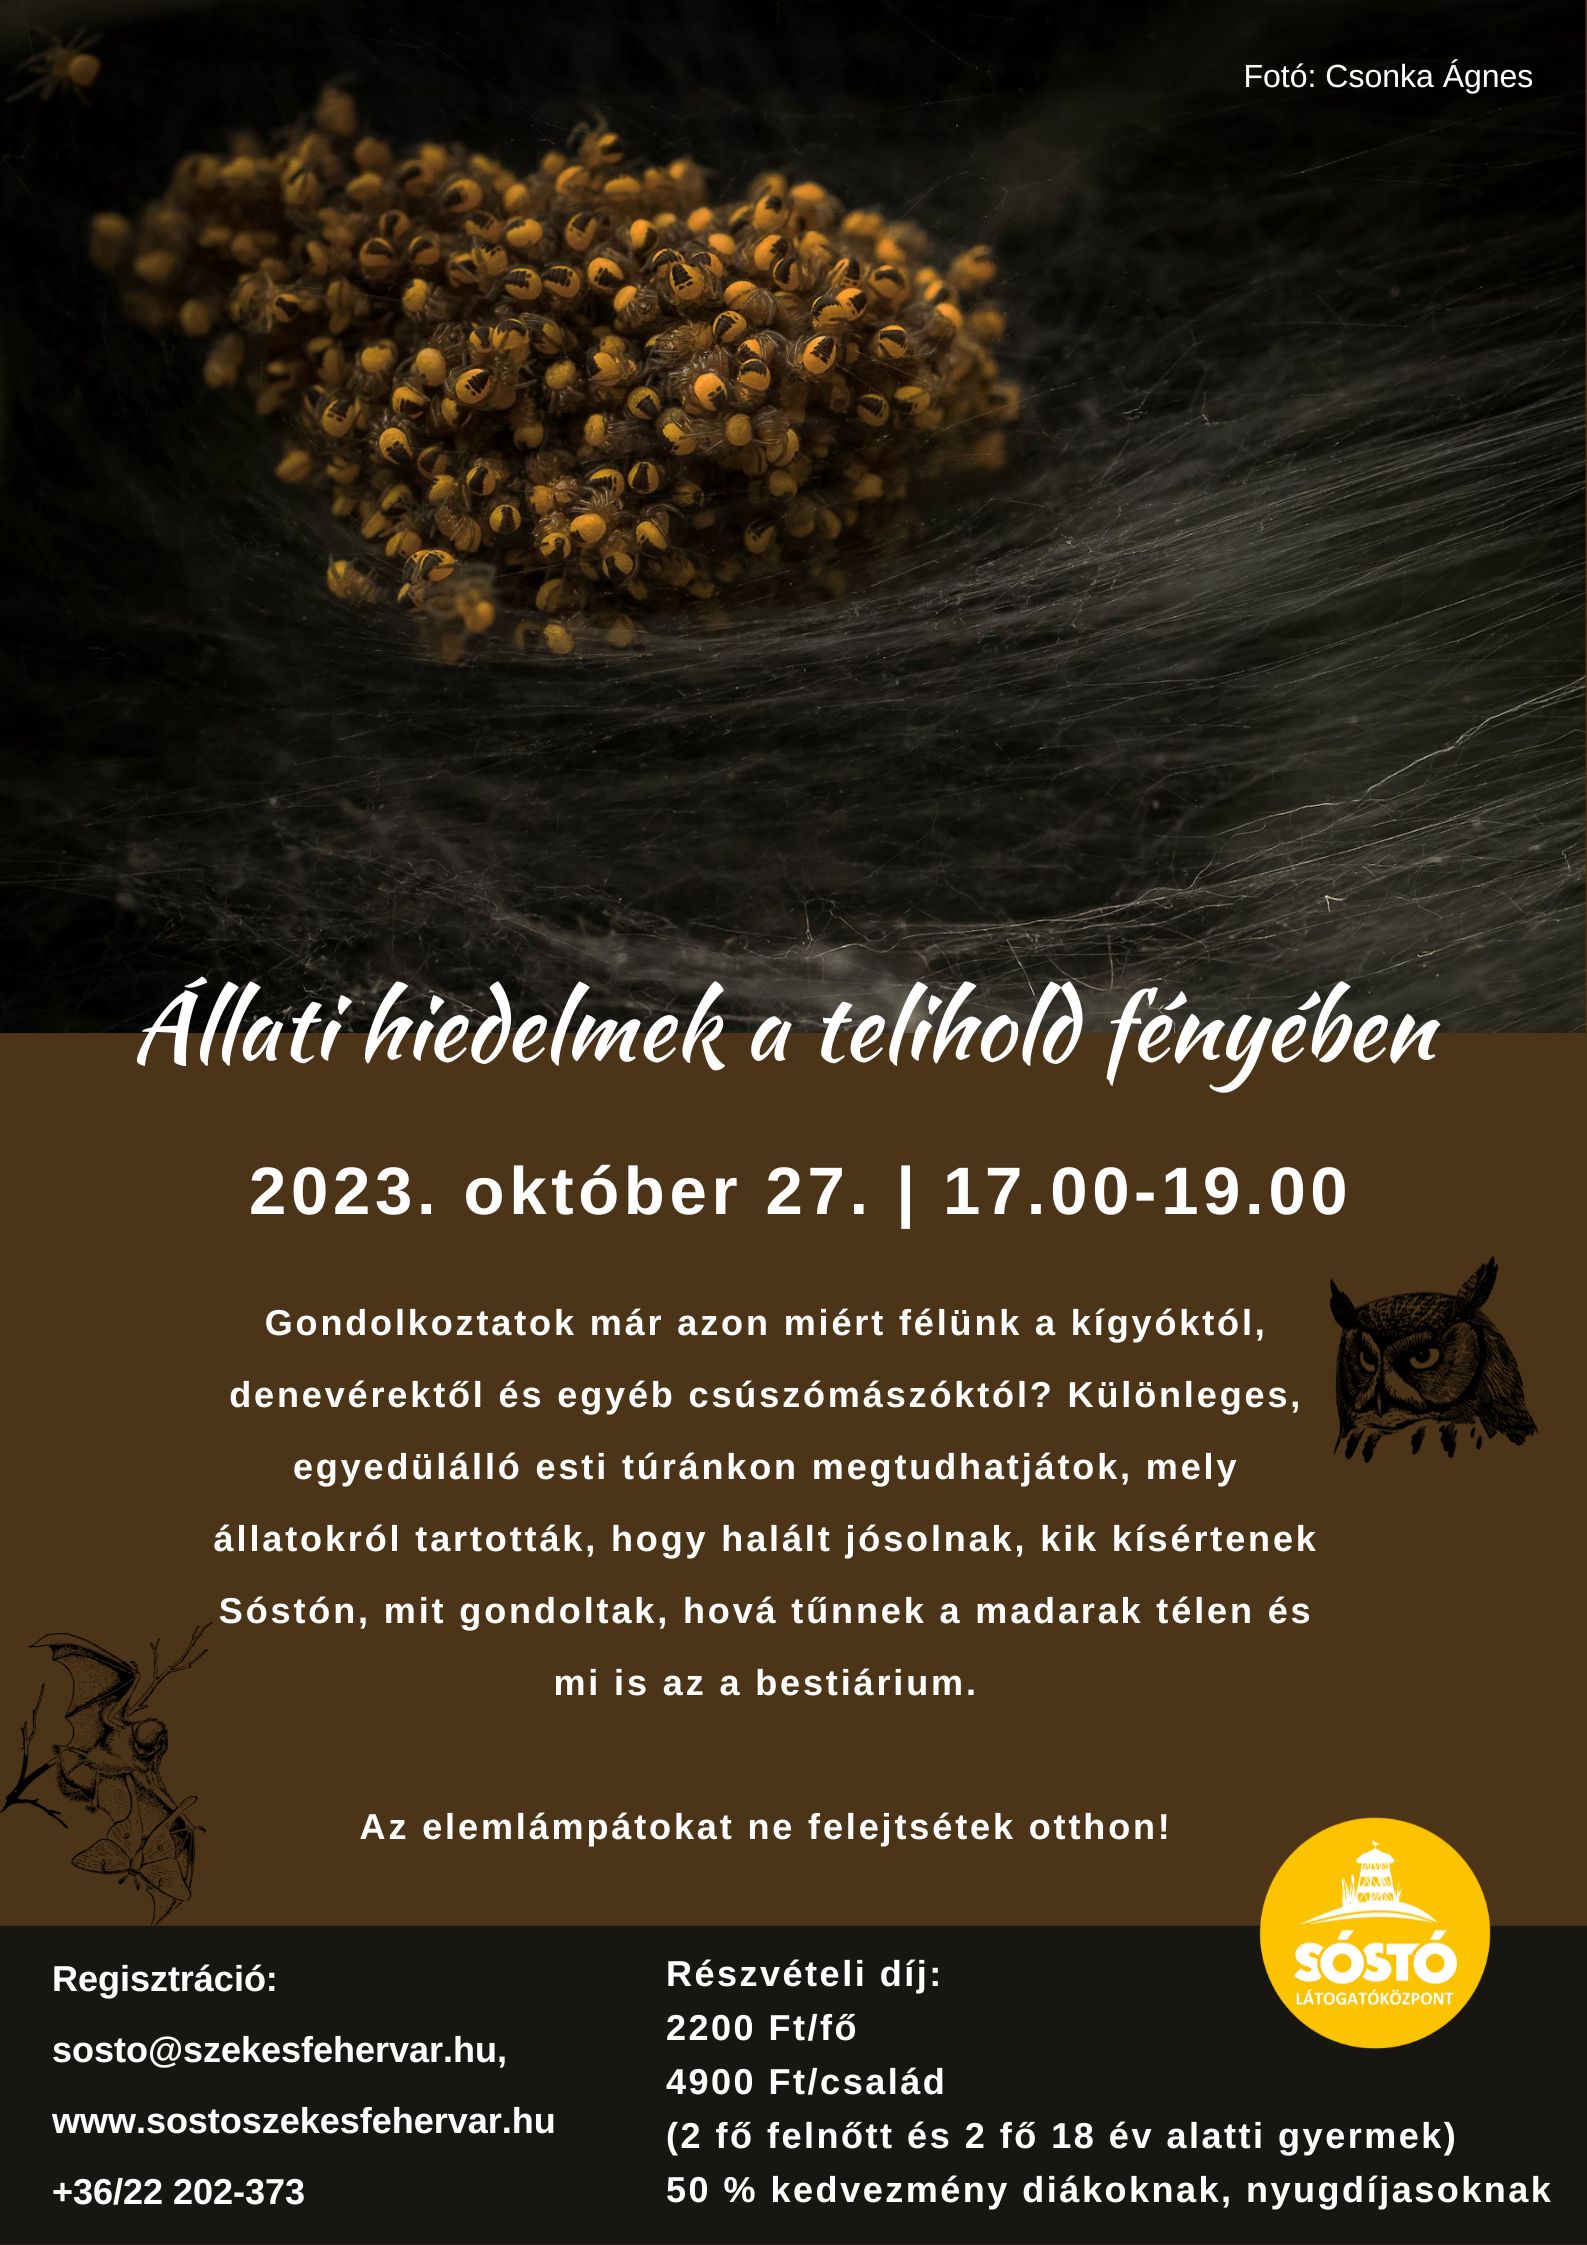 Állati hiedelmek a telihold fényében – különleges túrát rendeznek a Sóstón október 27-én